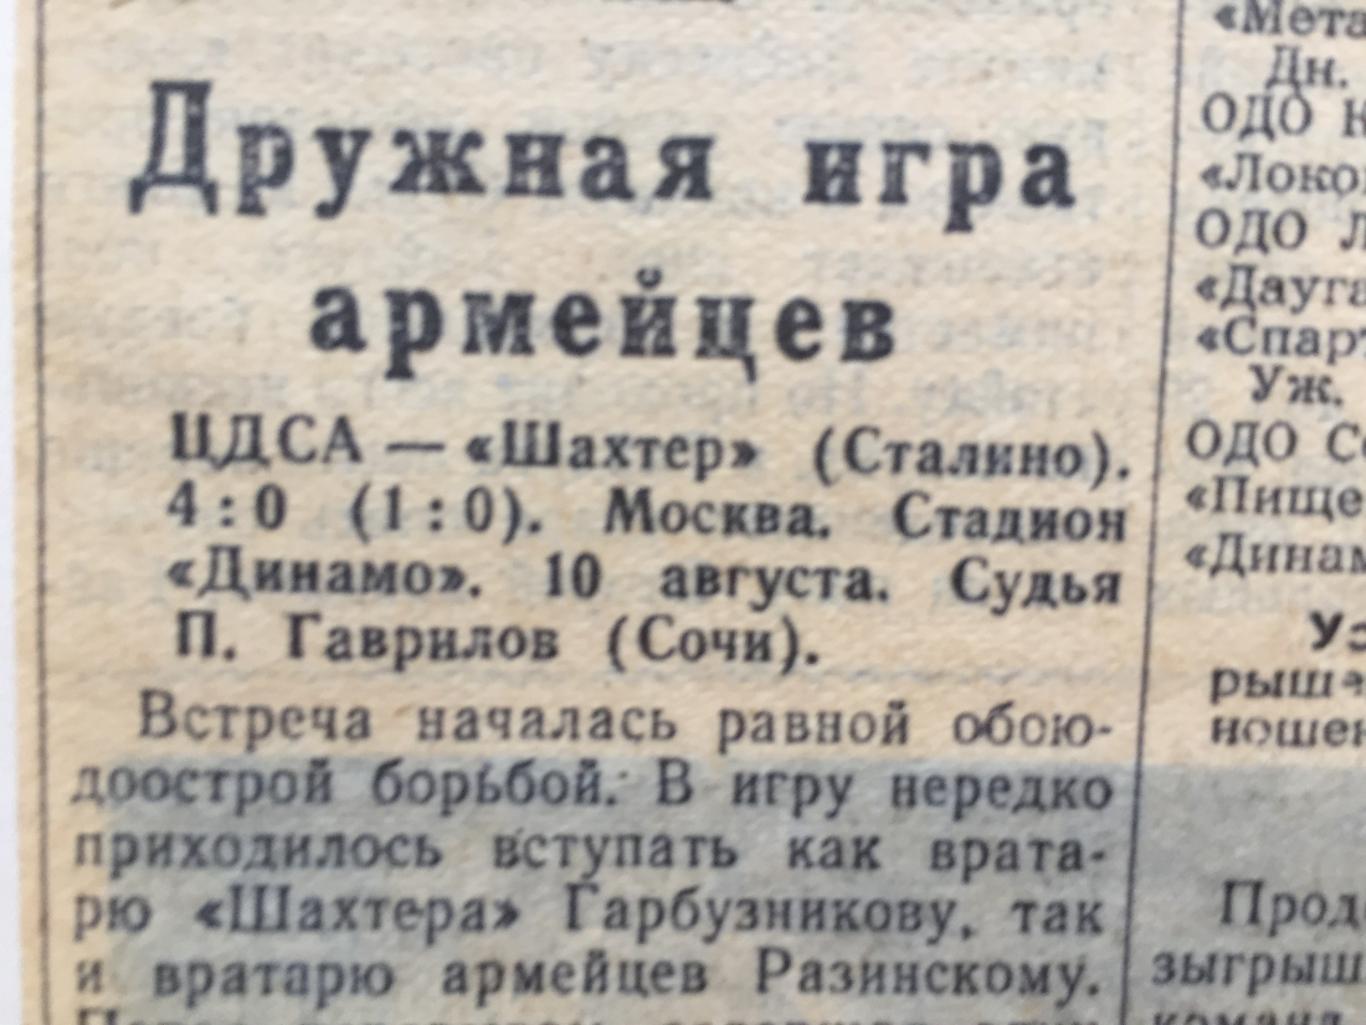 Чемпионат СССР Крылья Куйбышев - Локомотив,ЦДСА - Сталино 1955 2